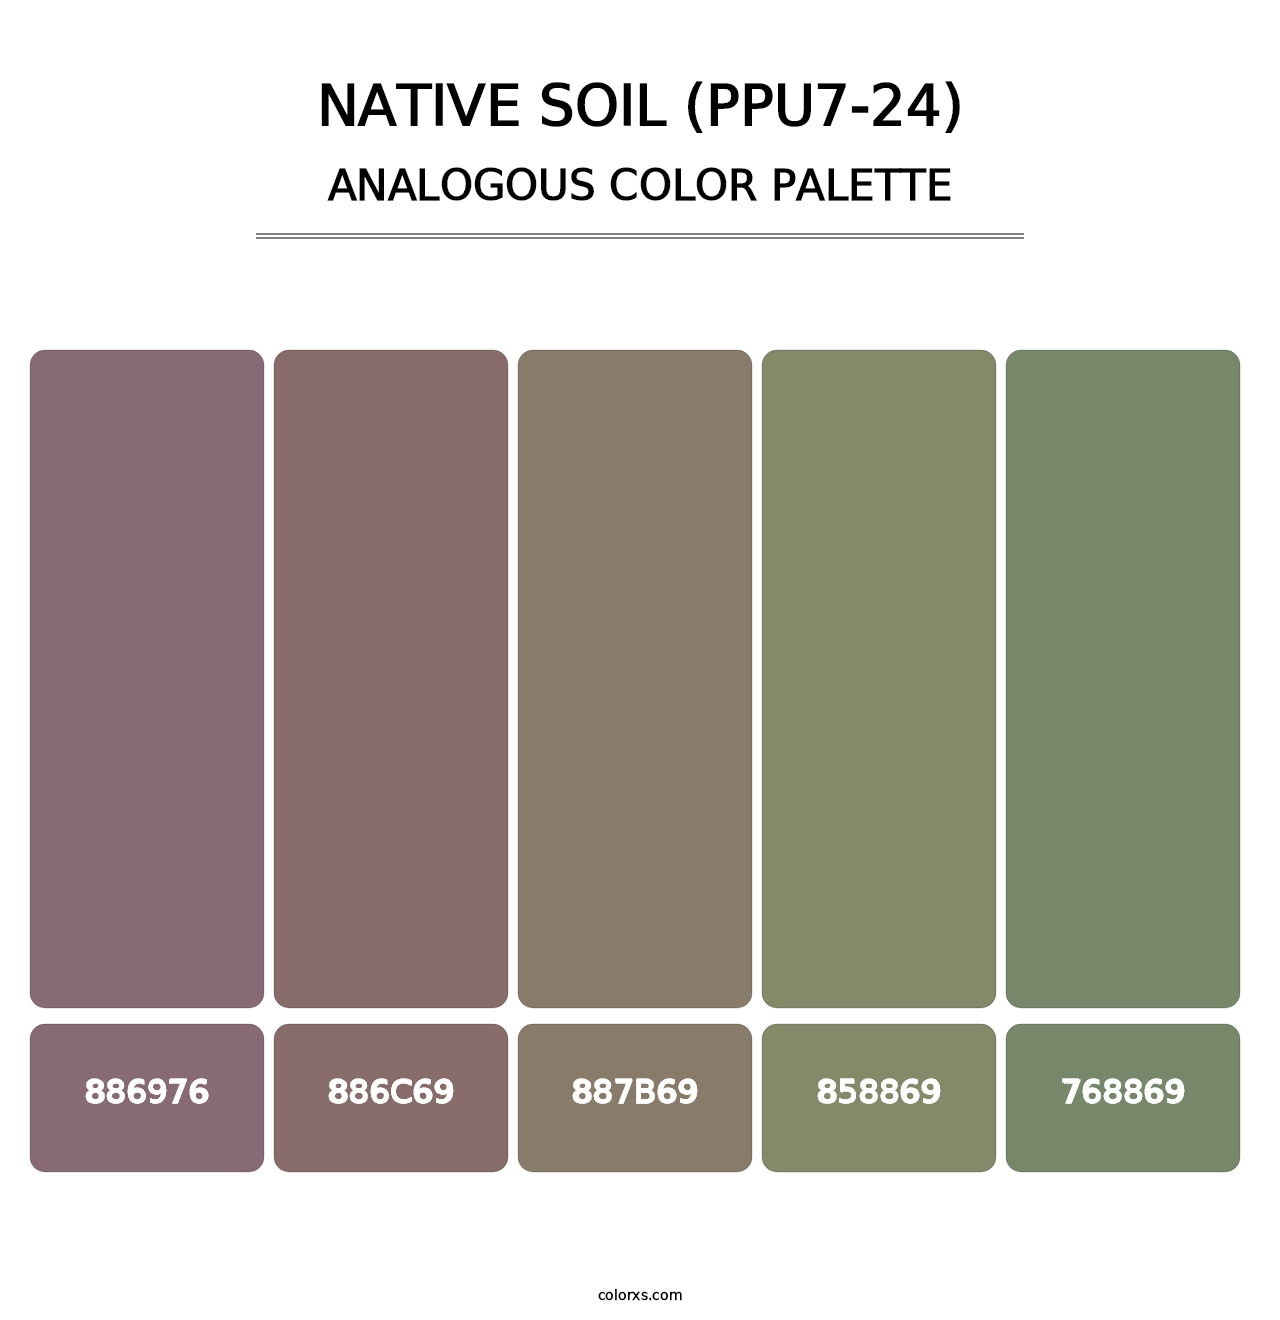 Native Soil (PPU7-24) - Analogous Color Palette